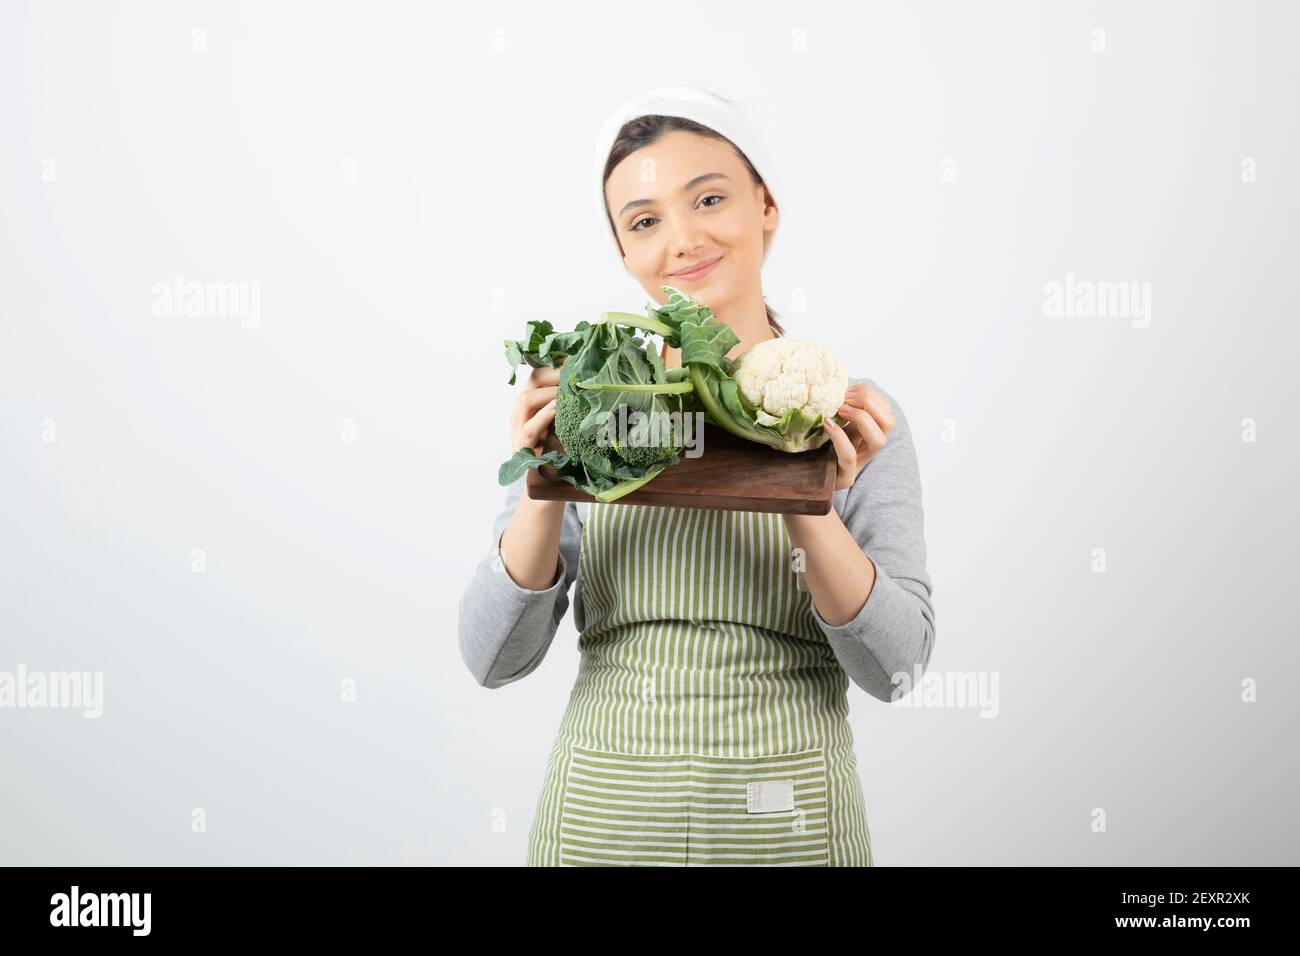 Immagine di una donna sorridente e attraente che tiene un piatto di legno di cavolfiori Foto Stock